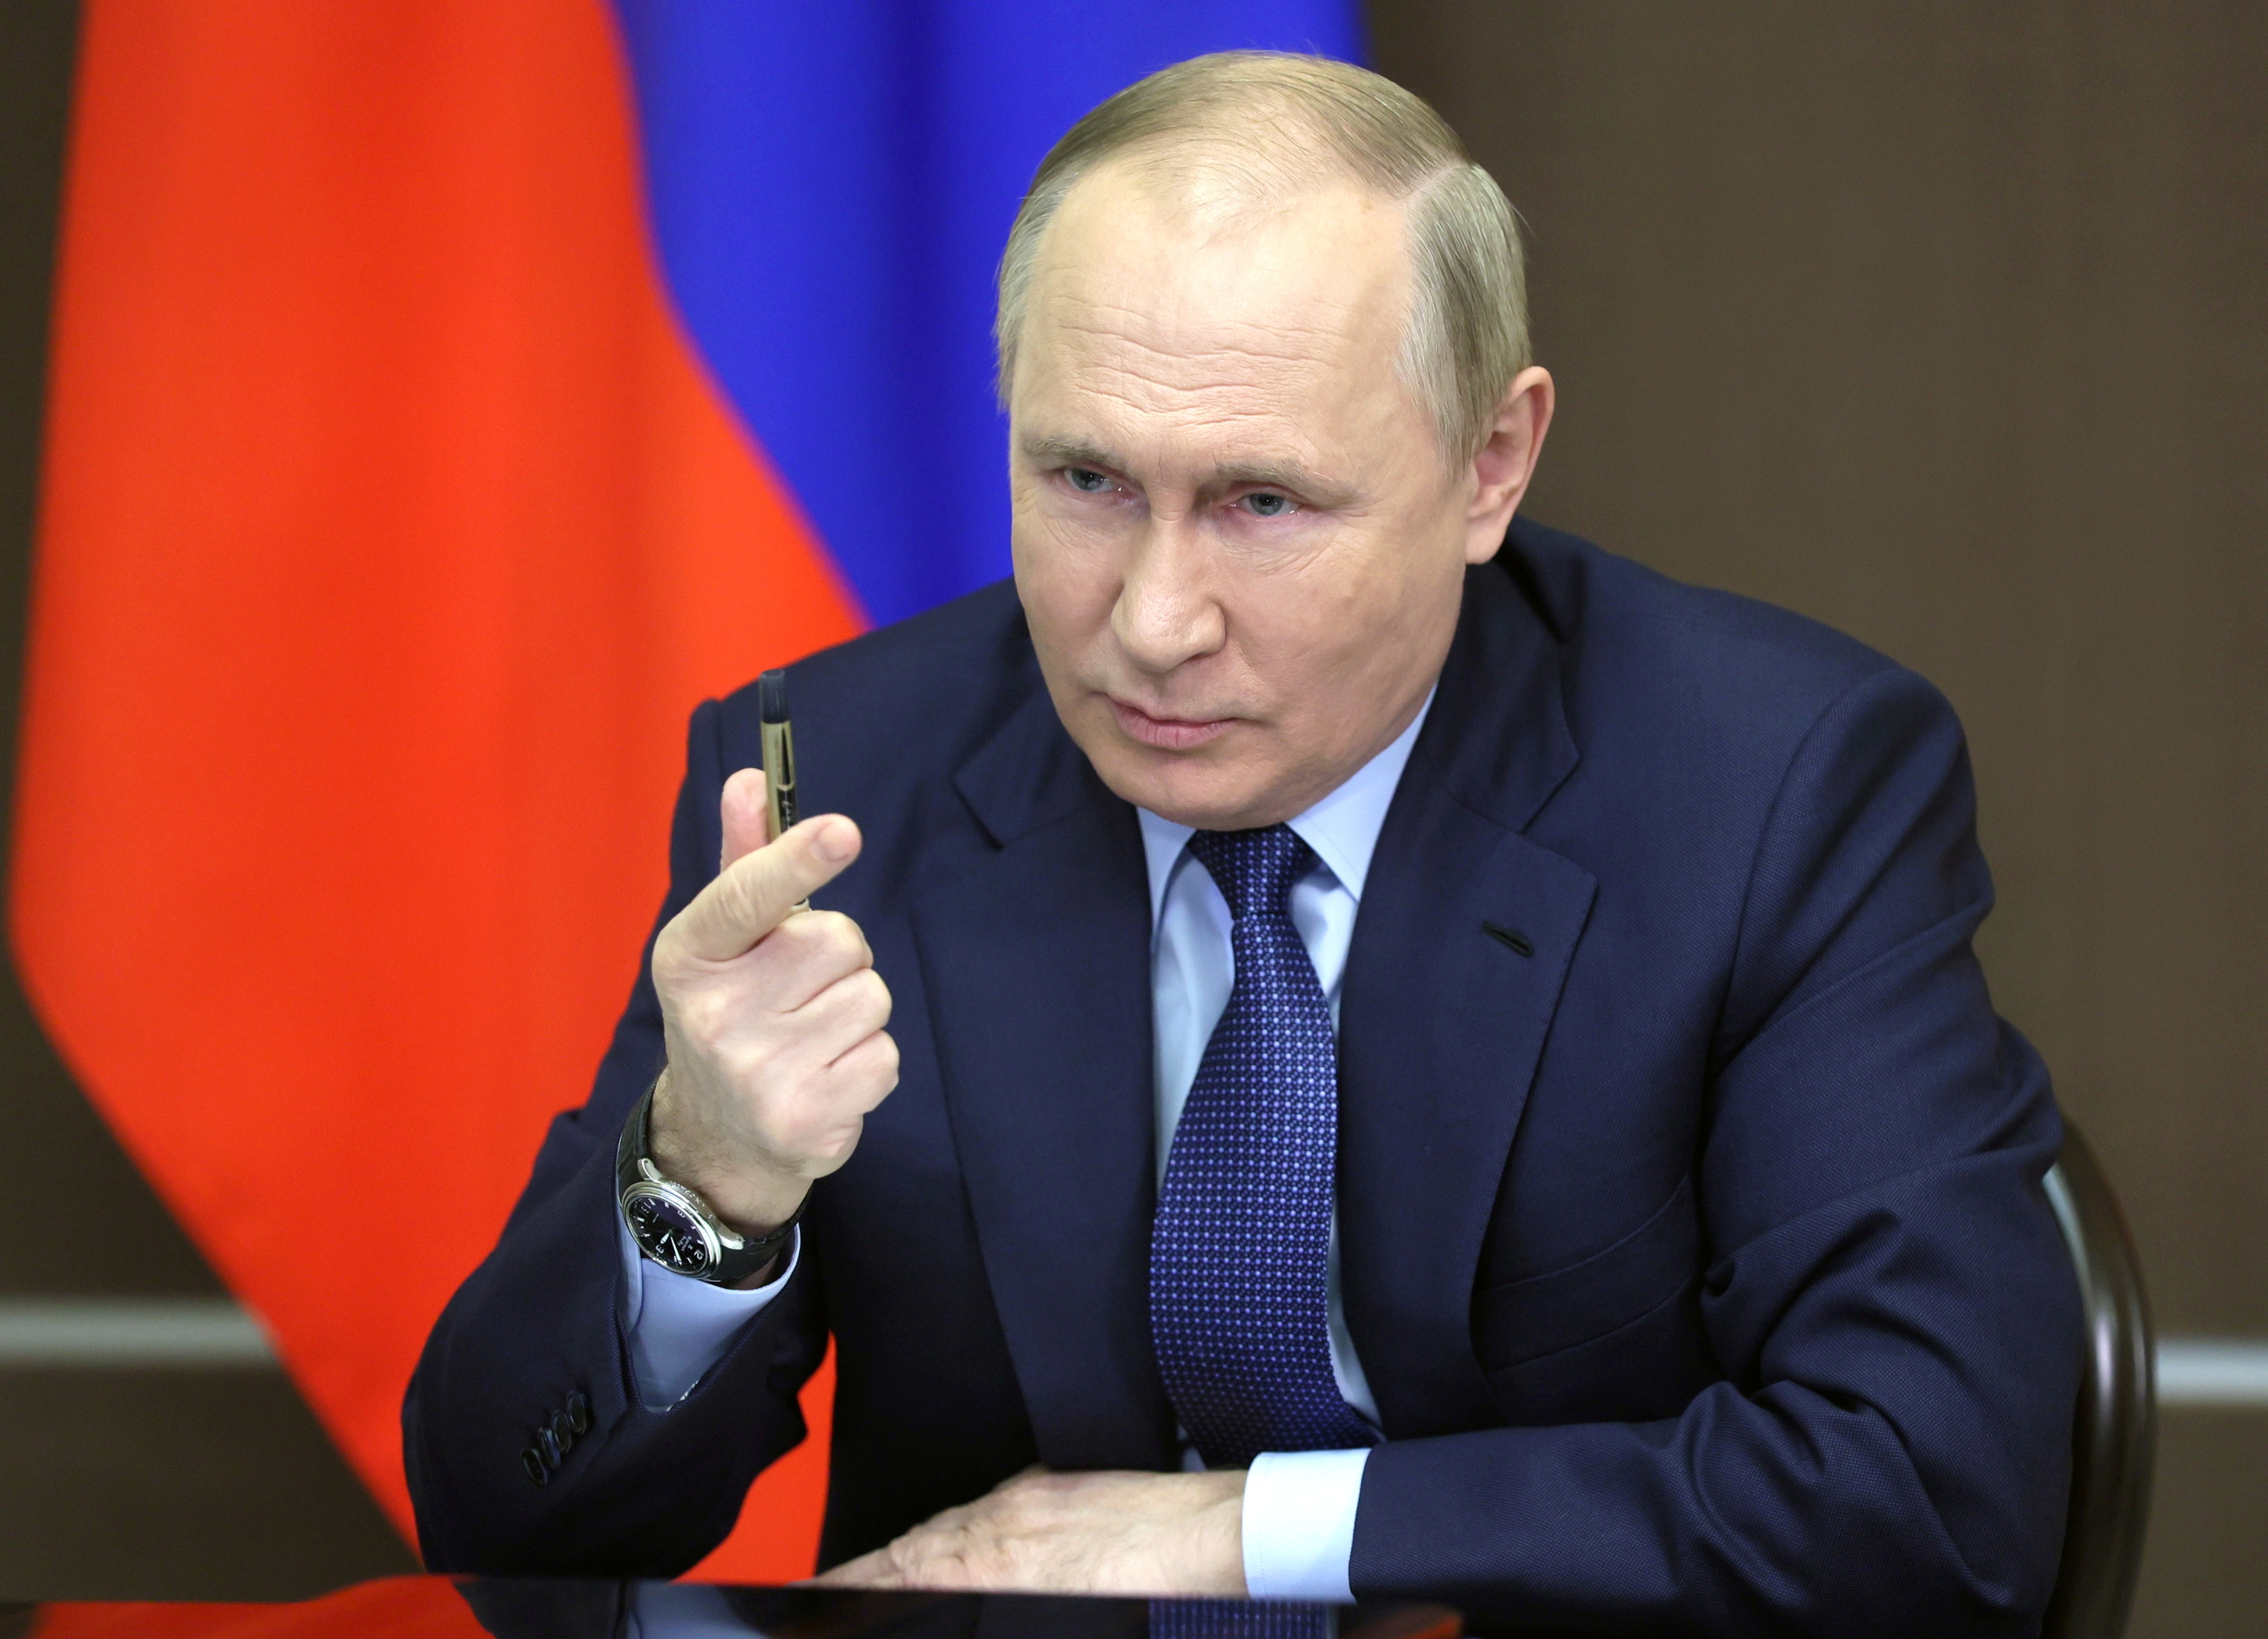 El presidente ruso, Vladimir Putin, durante una reunin por videollamada este mircoles en Sochi.